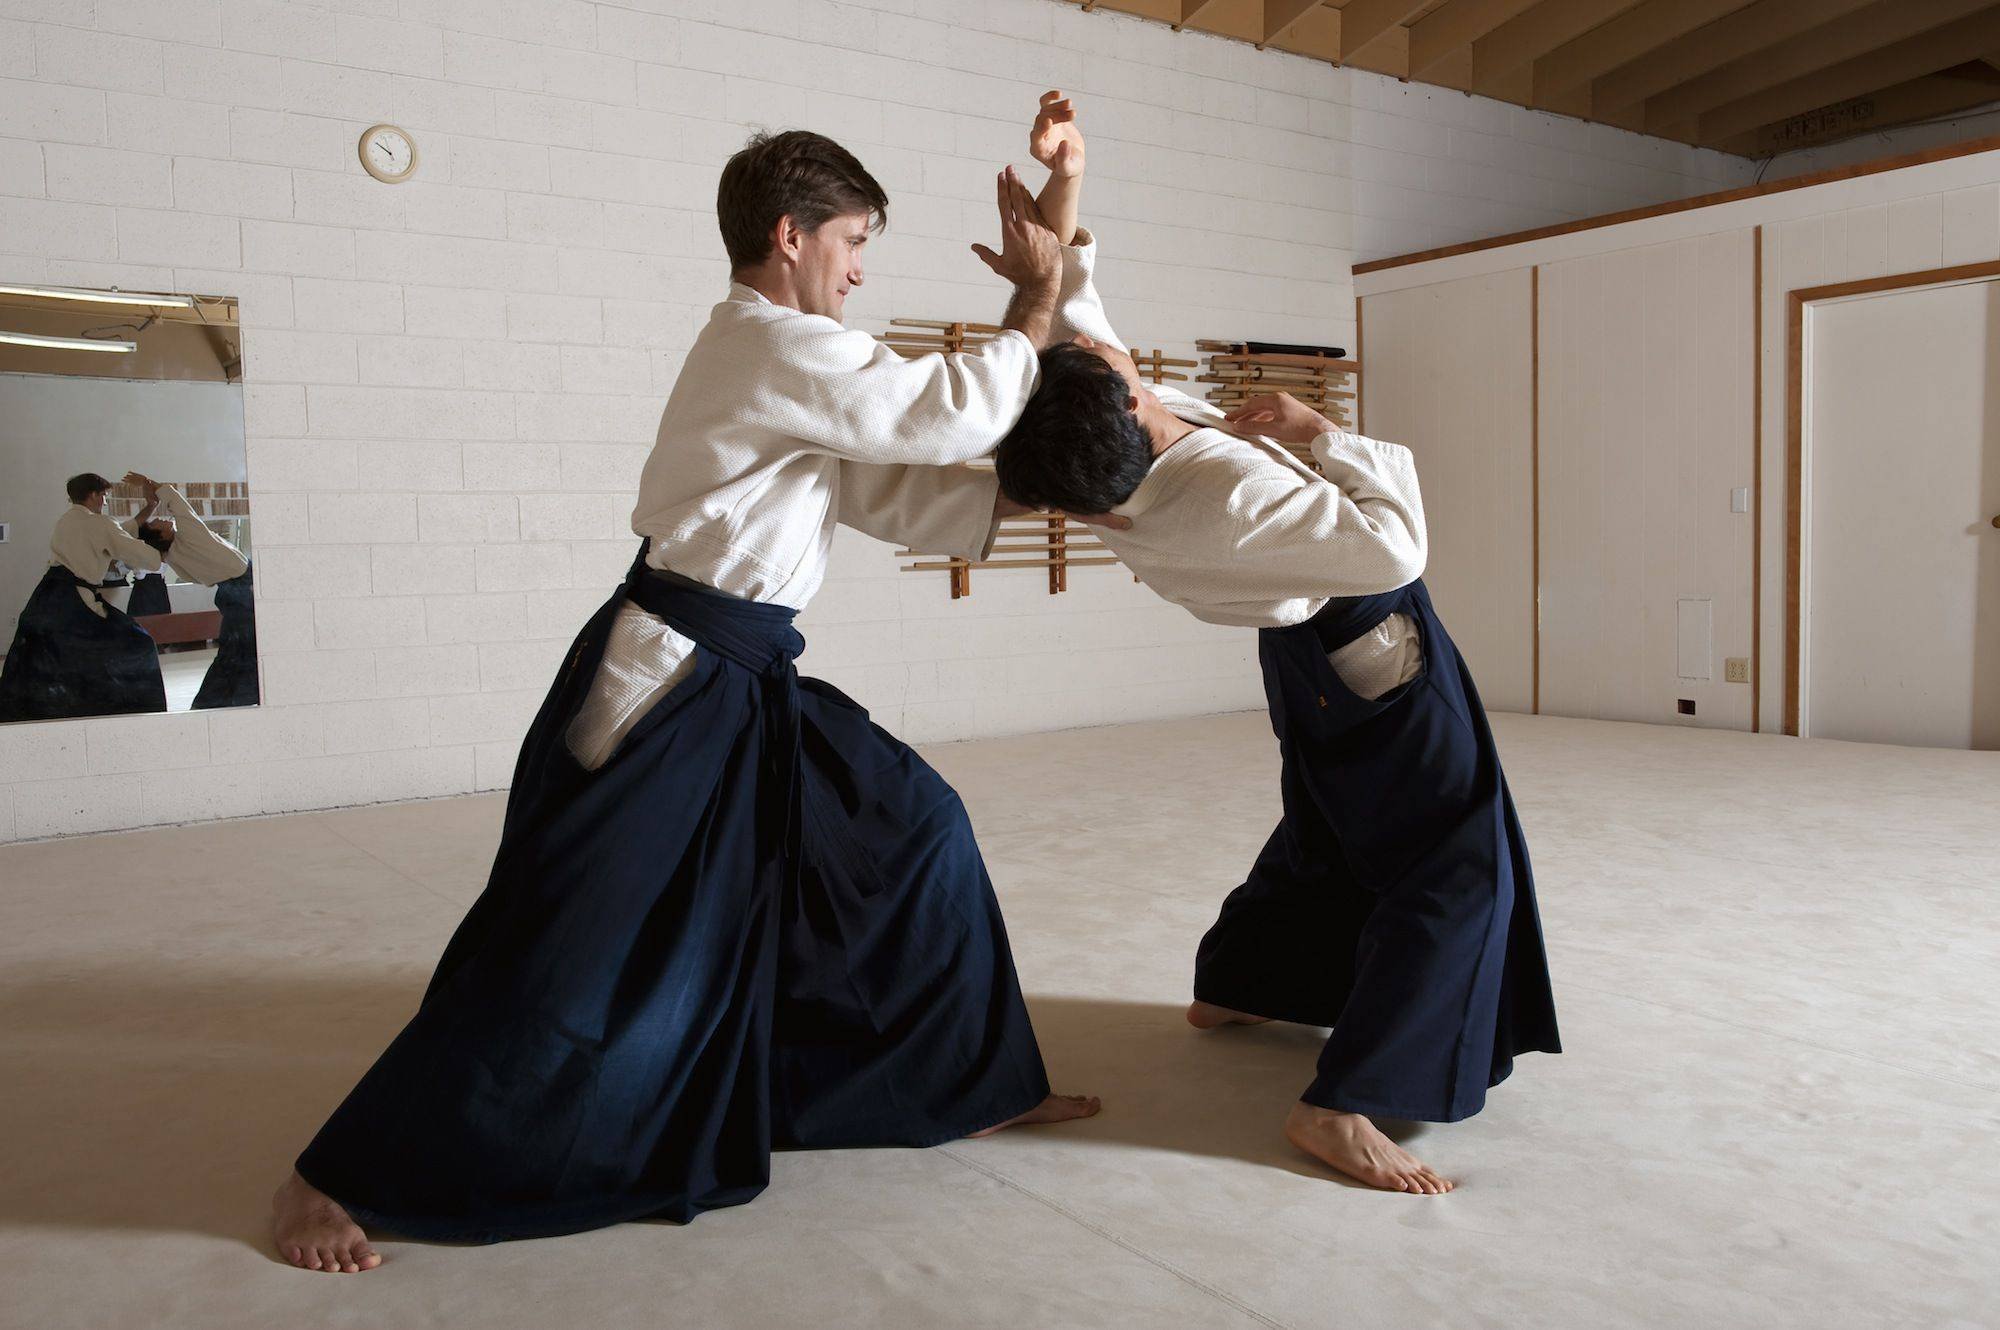 Восточные единоборства какие. Айкидо это японское боевое искусство. Карате боевые искусства Японии. Айкидо карате Япония. Японские боевые искусства (айкидо, дзюдо, каратэ до, сумо).